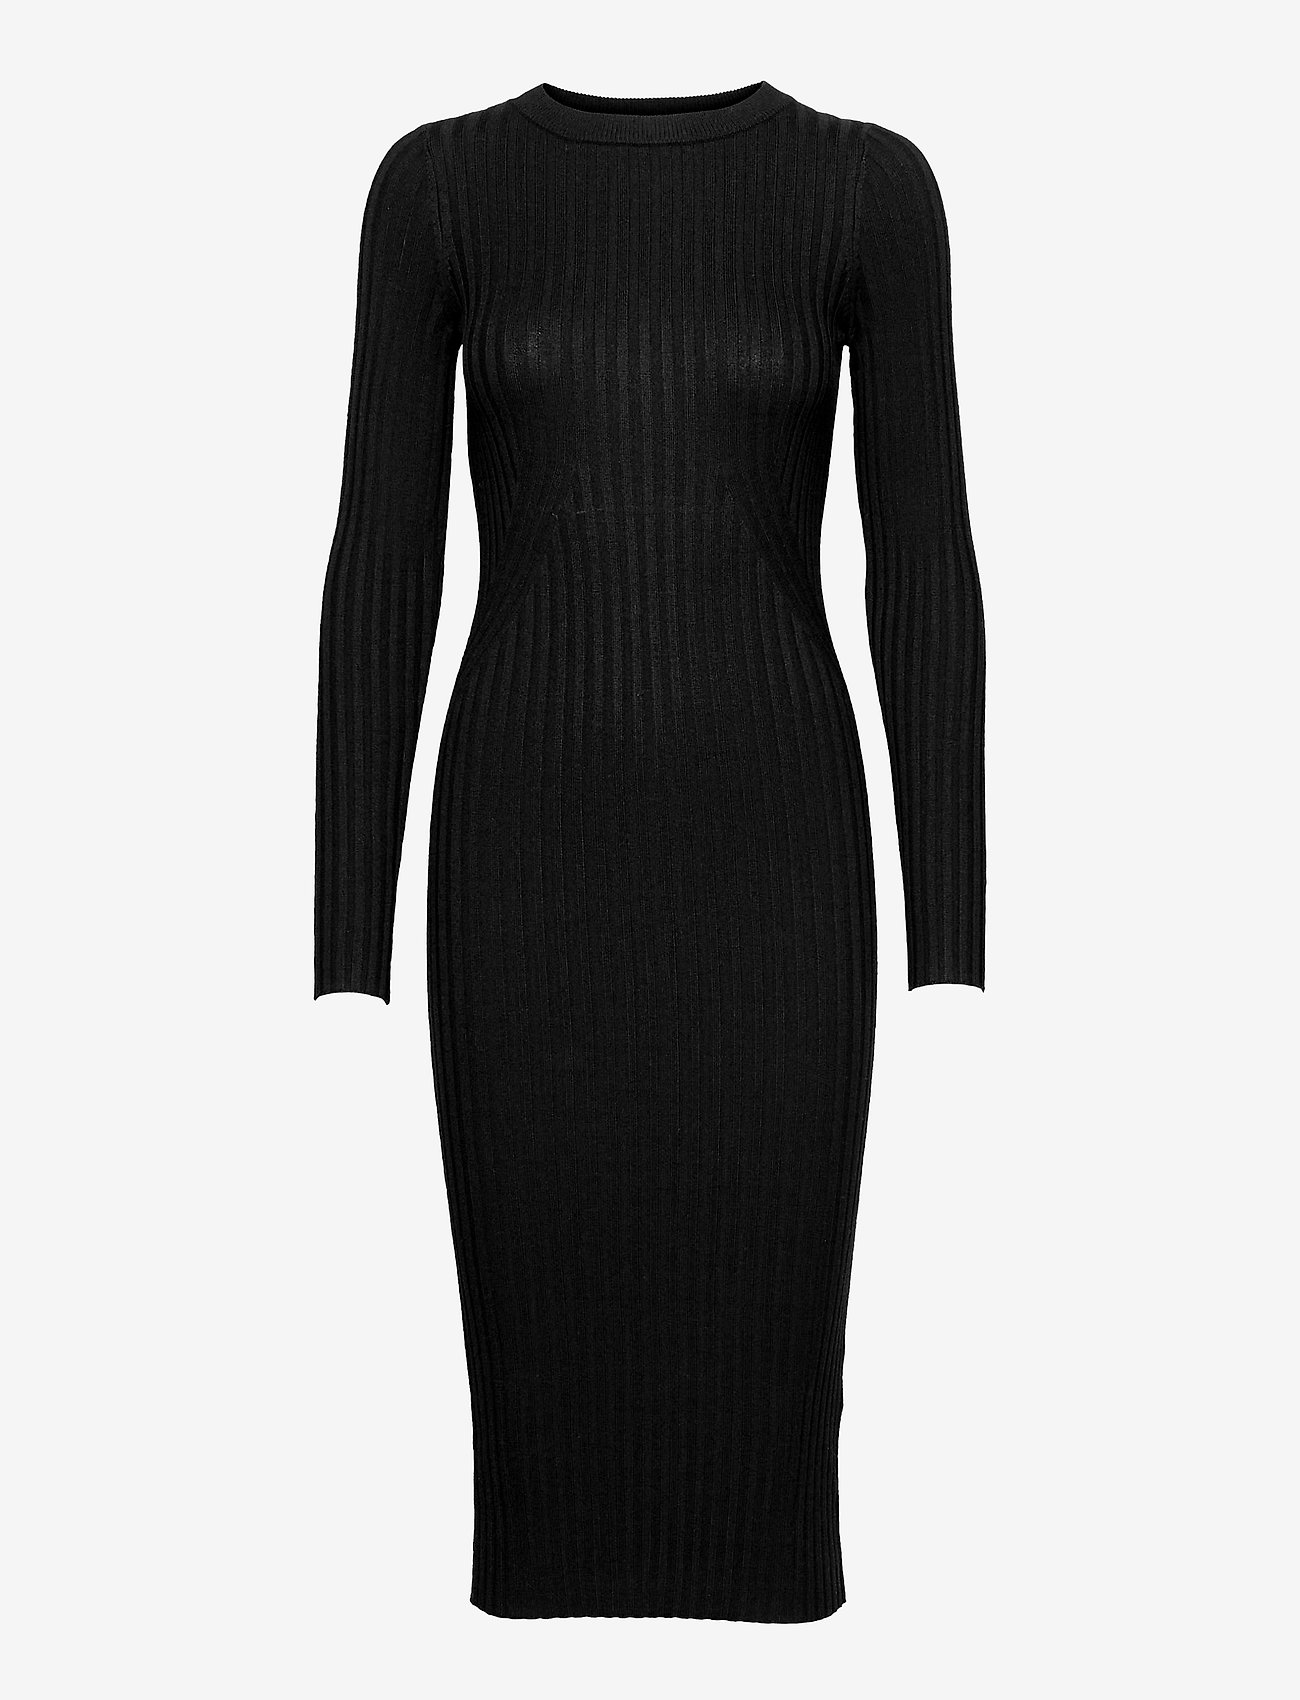 NORR - Karlina o-neck LS dress - stramme kjoler - black - 1